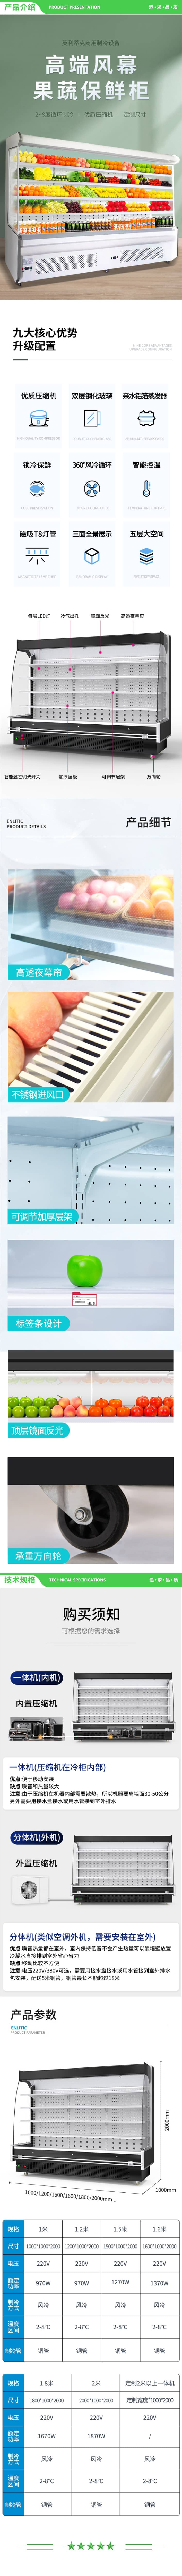 英利蒂克 Enlitic FMG1000Y 风幕展示柜 蔬菜水果保鲜风冷柜 冷藏柜 商用柜 1.0米【高端风冷款】一体机 2.jpg